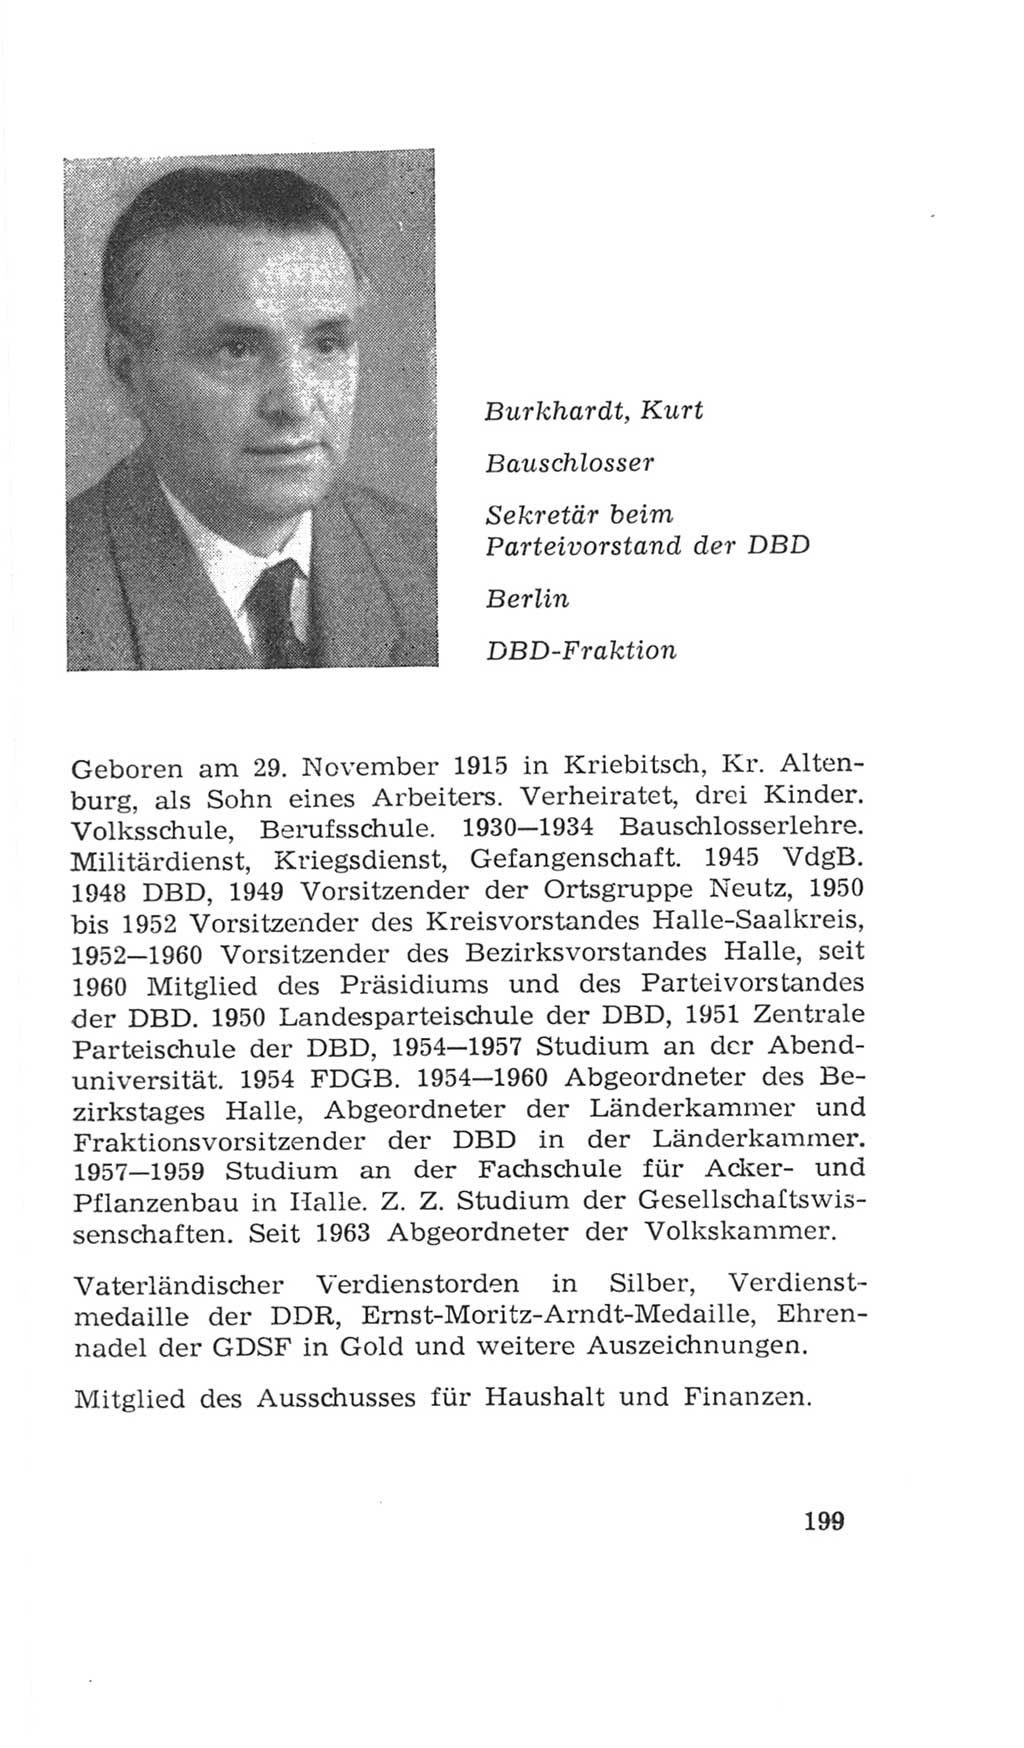 Volkskammer (VK) der Deutschen Demokratischen Republik (DDR), 4. Wahlperiode 1963-1967, Seite 199 (VK. DDR 4. WP. 1963-1967, S. 199)